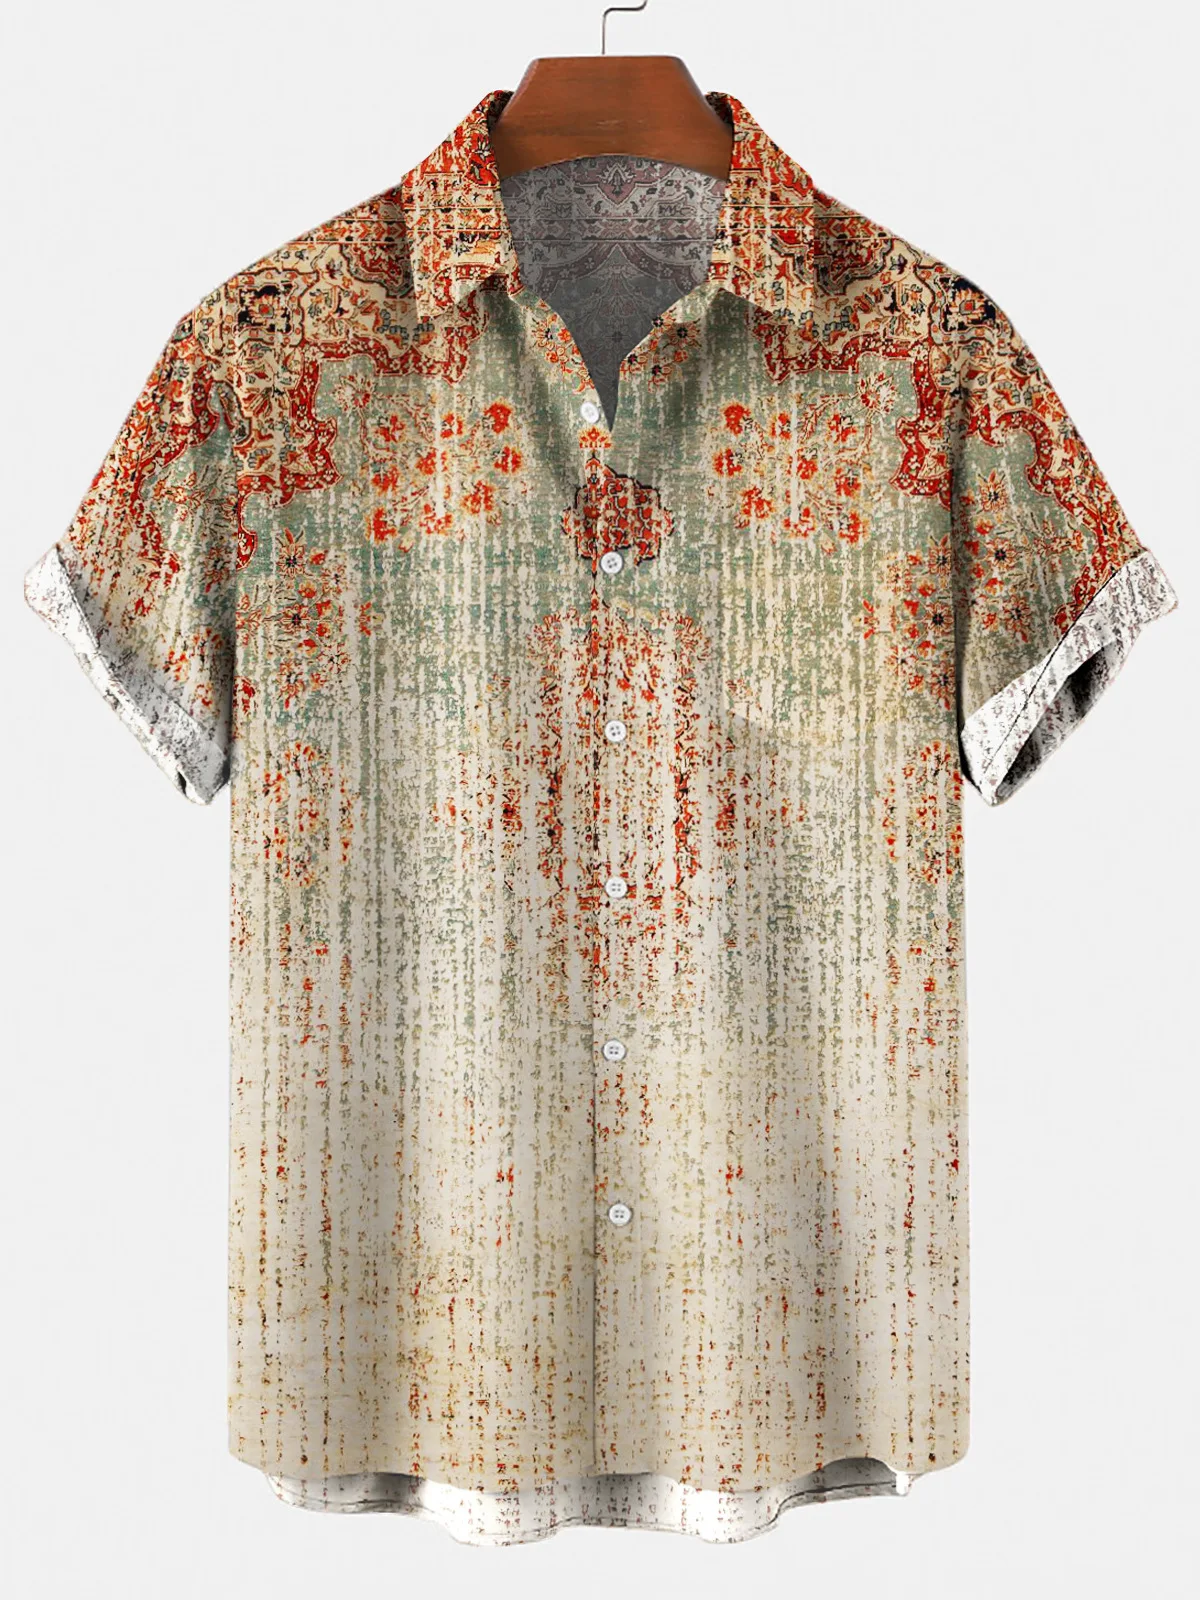 

Мужская рубашка с коротким рукавом, креативная рубашка большого размера с 6 лепестками и цифровым принтом, лето 2021